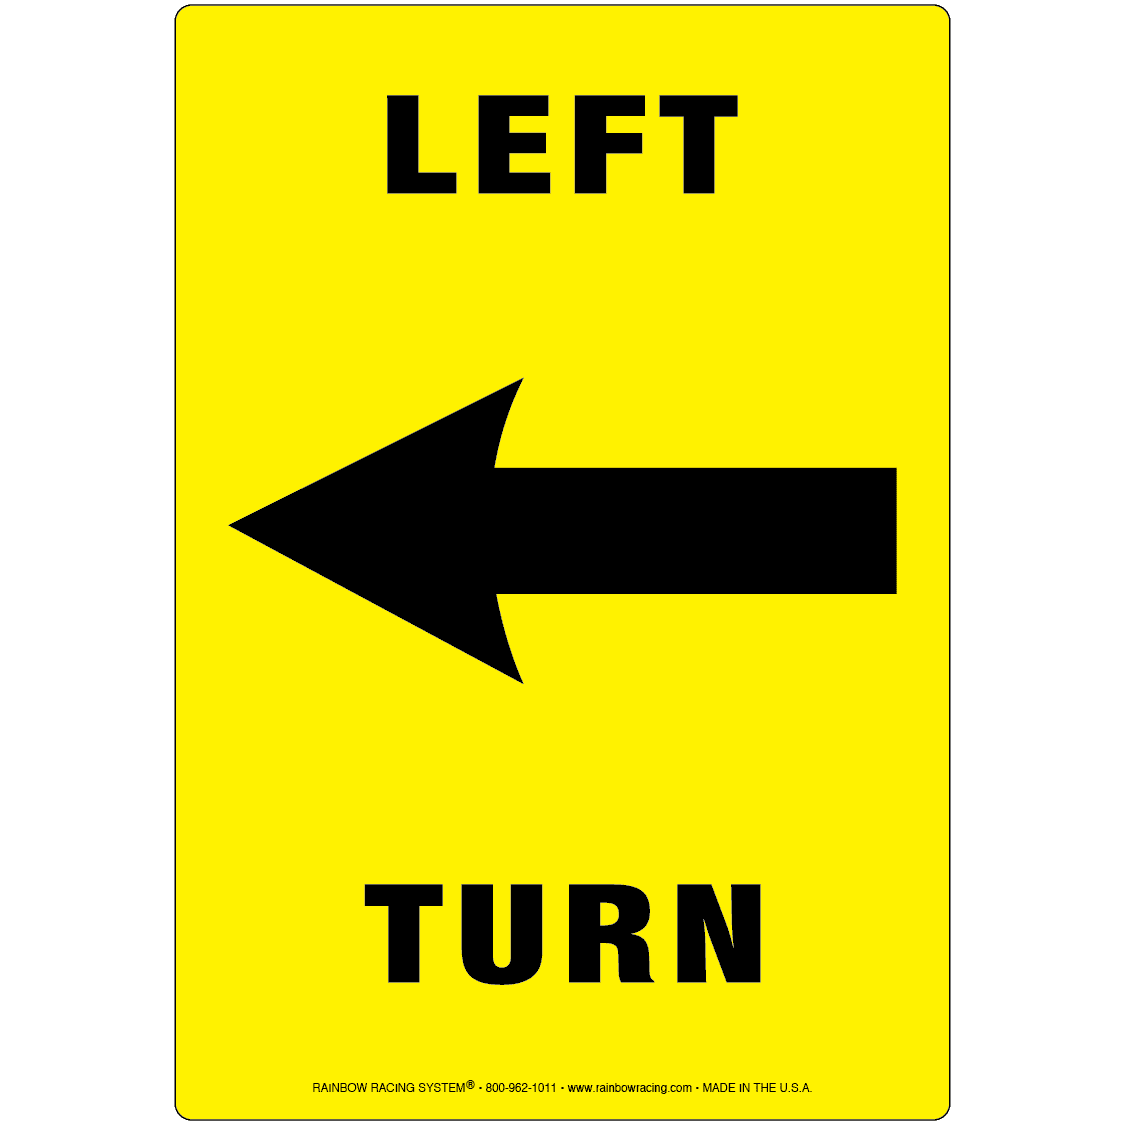 Life left to go. Turn left. Turn left картинка. Turn left turn right. Turn left cartoon.